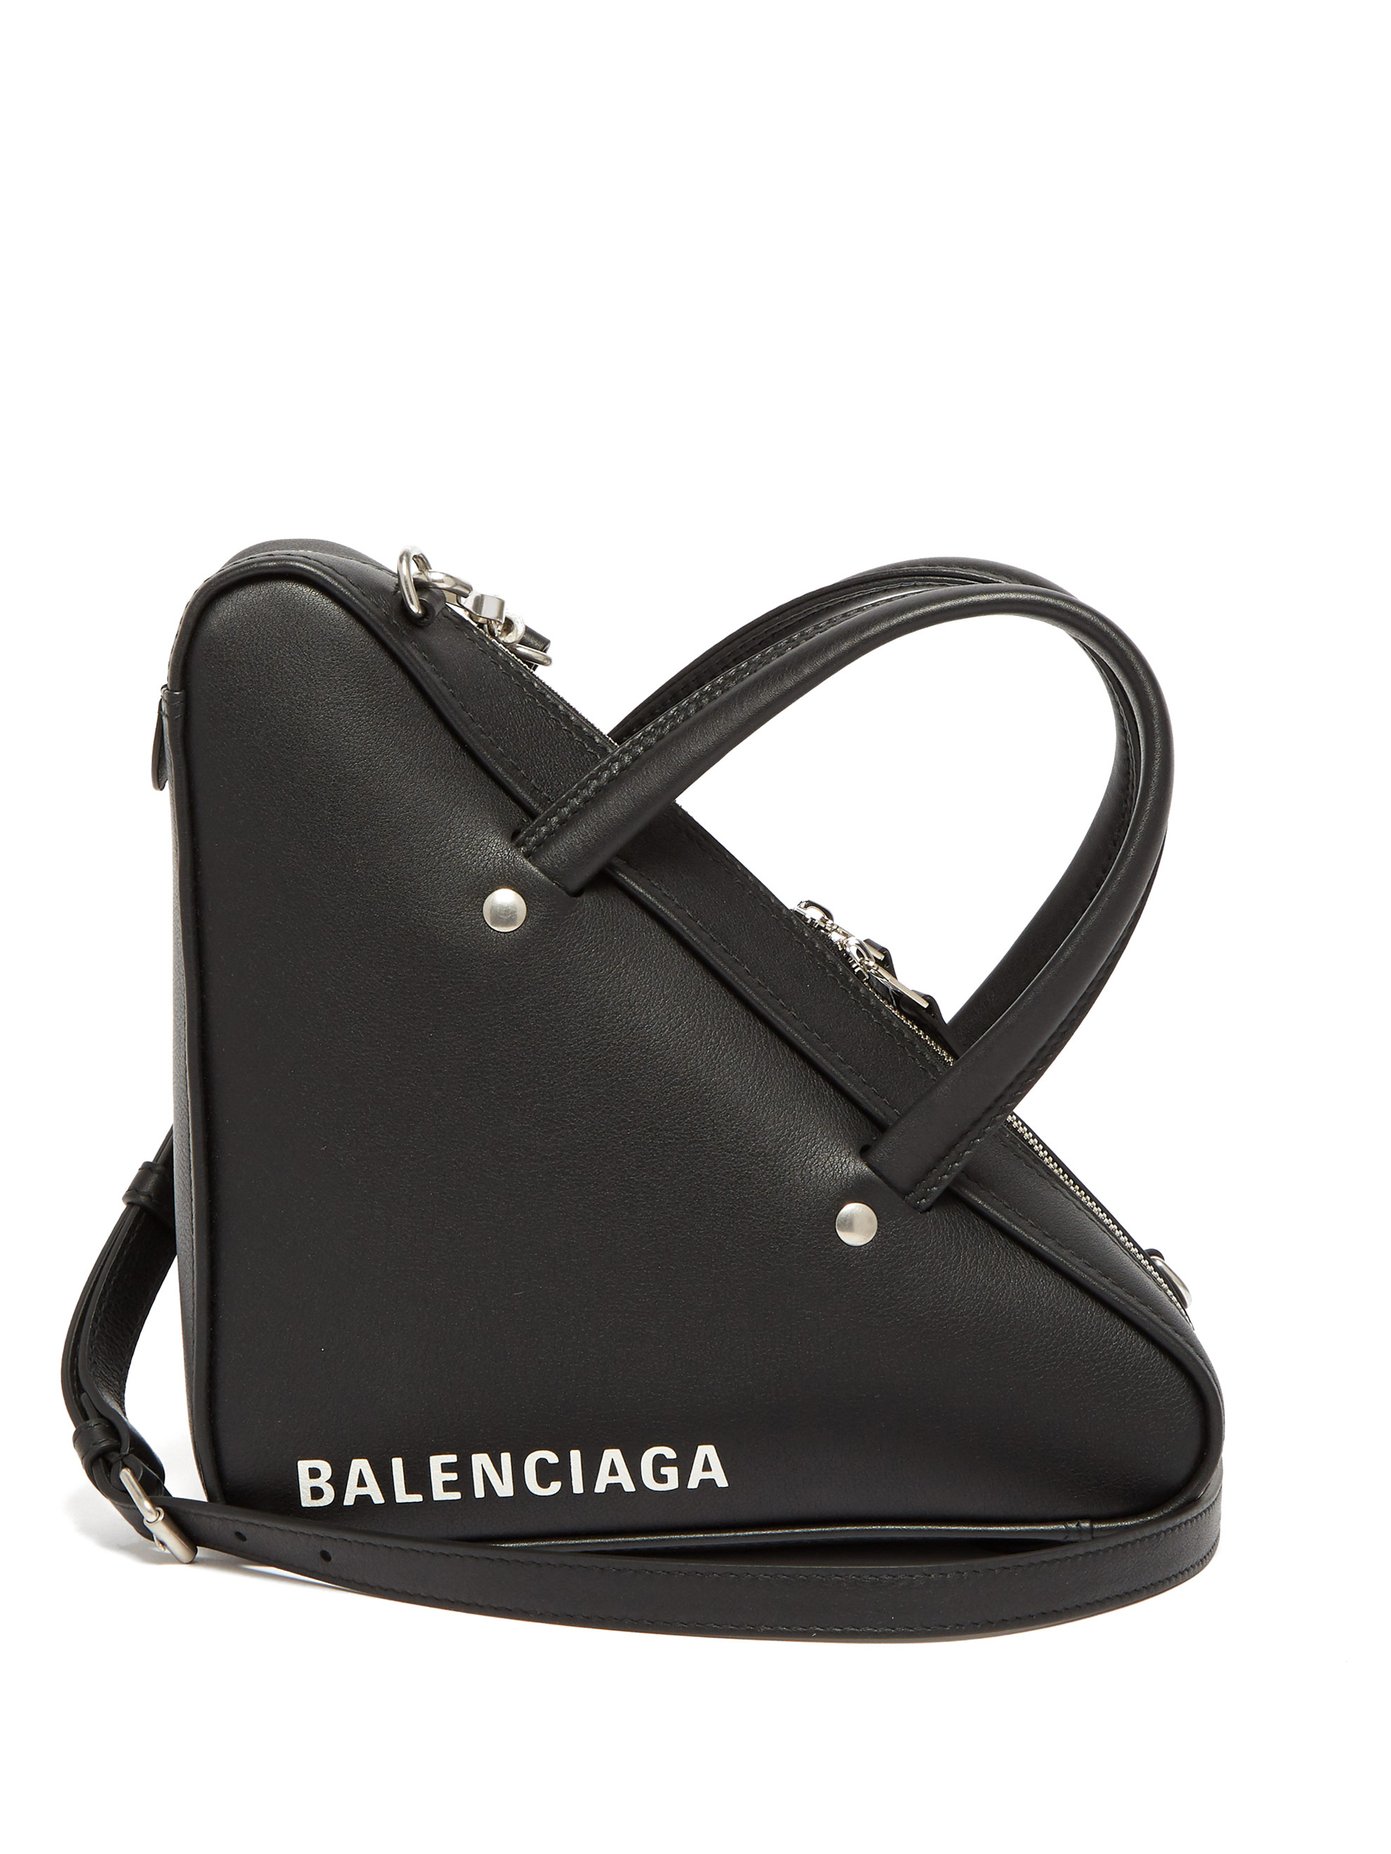 Triangle Duffle XS bag | Balenciaga 